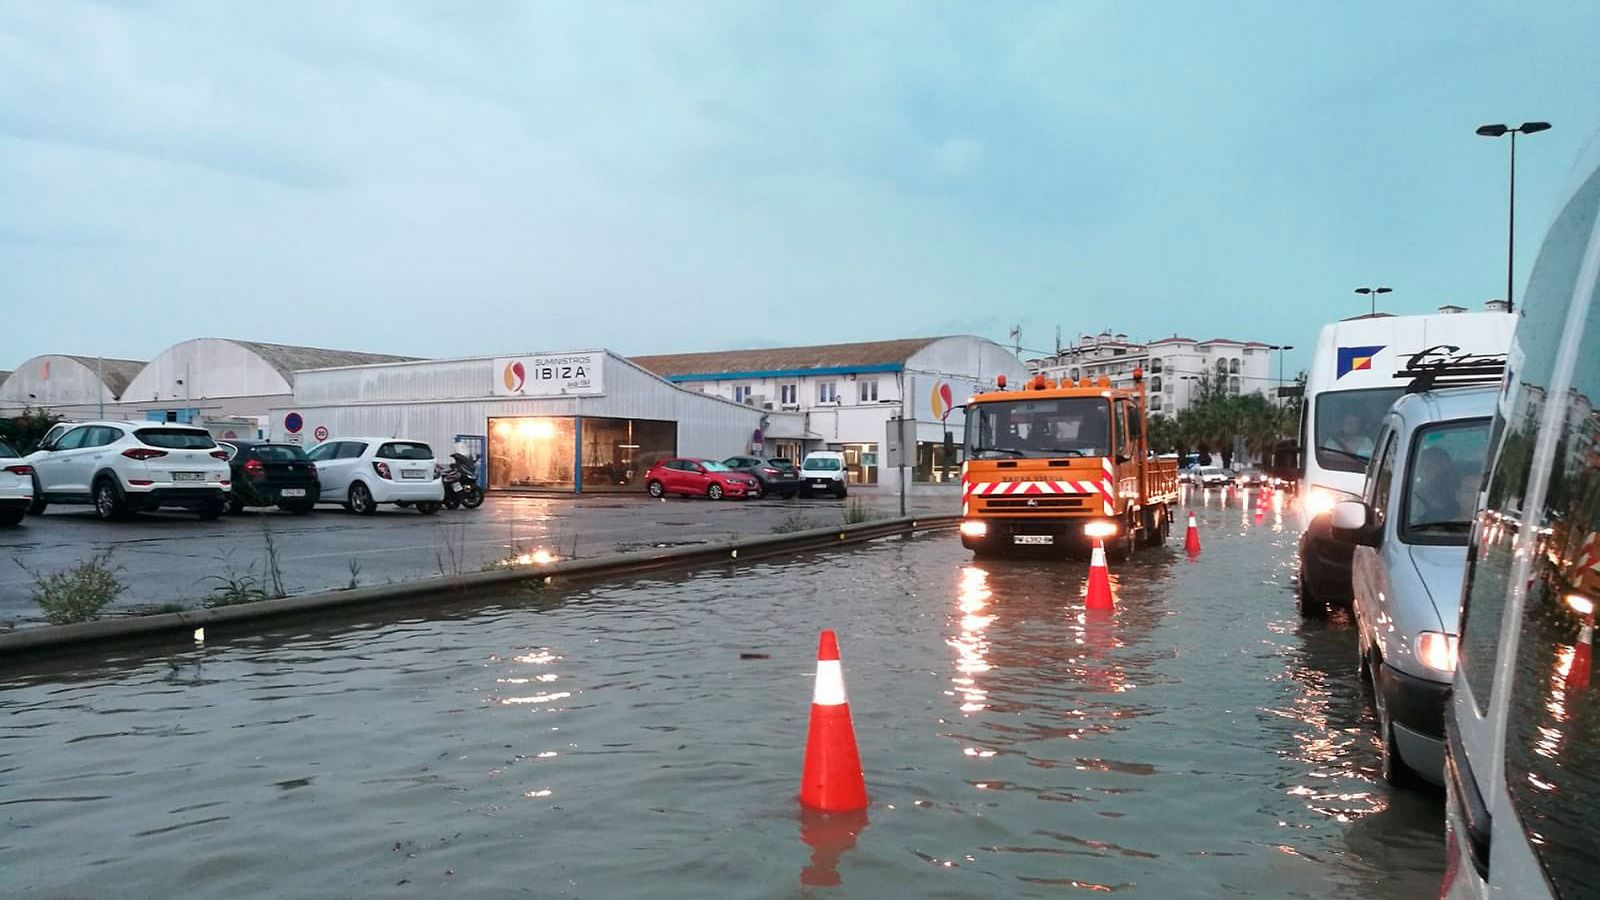 DANA |  Las lluvias torrenciales dejan destrozos e inundaciones en Baleares, Alicante y Murcia - RTVE.es